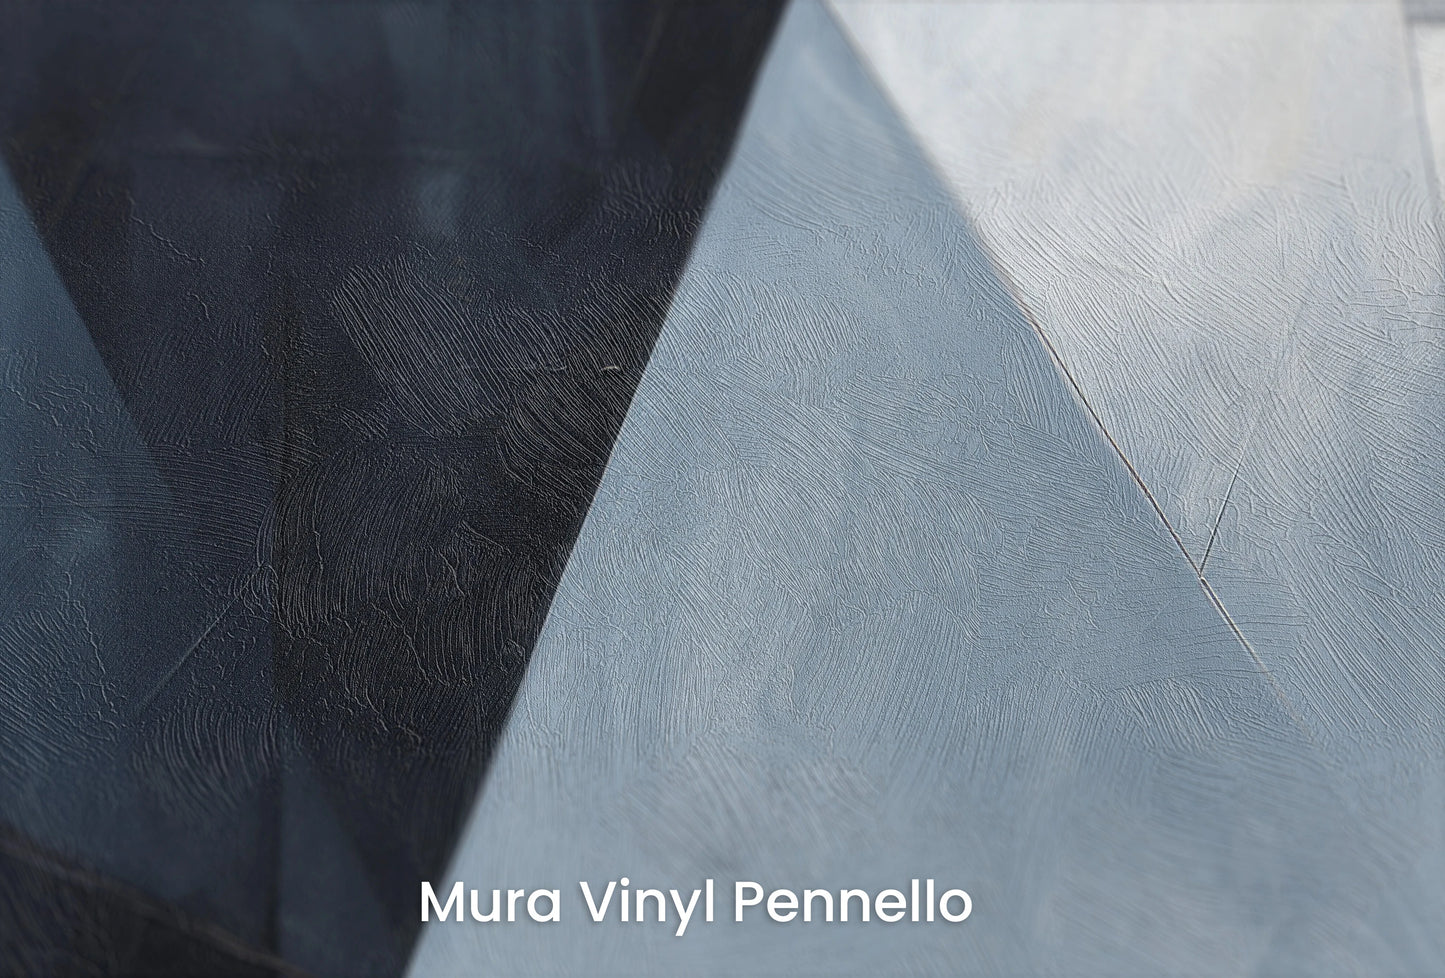 Zbliżenie na artystyczną fototapetę o nazwie Angular Elegance na podłożu Mura Vinyl Pennello - faktura pociągnięć pędzla malarskiego.